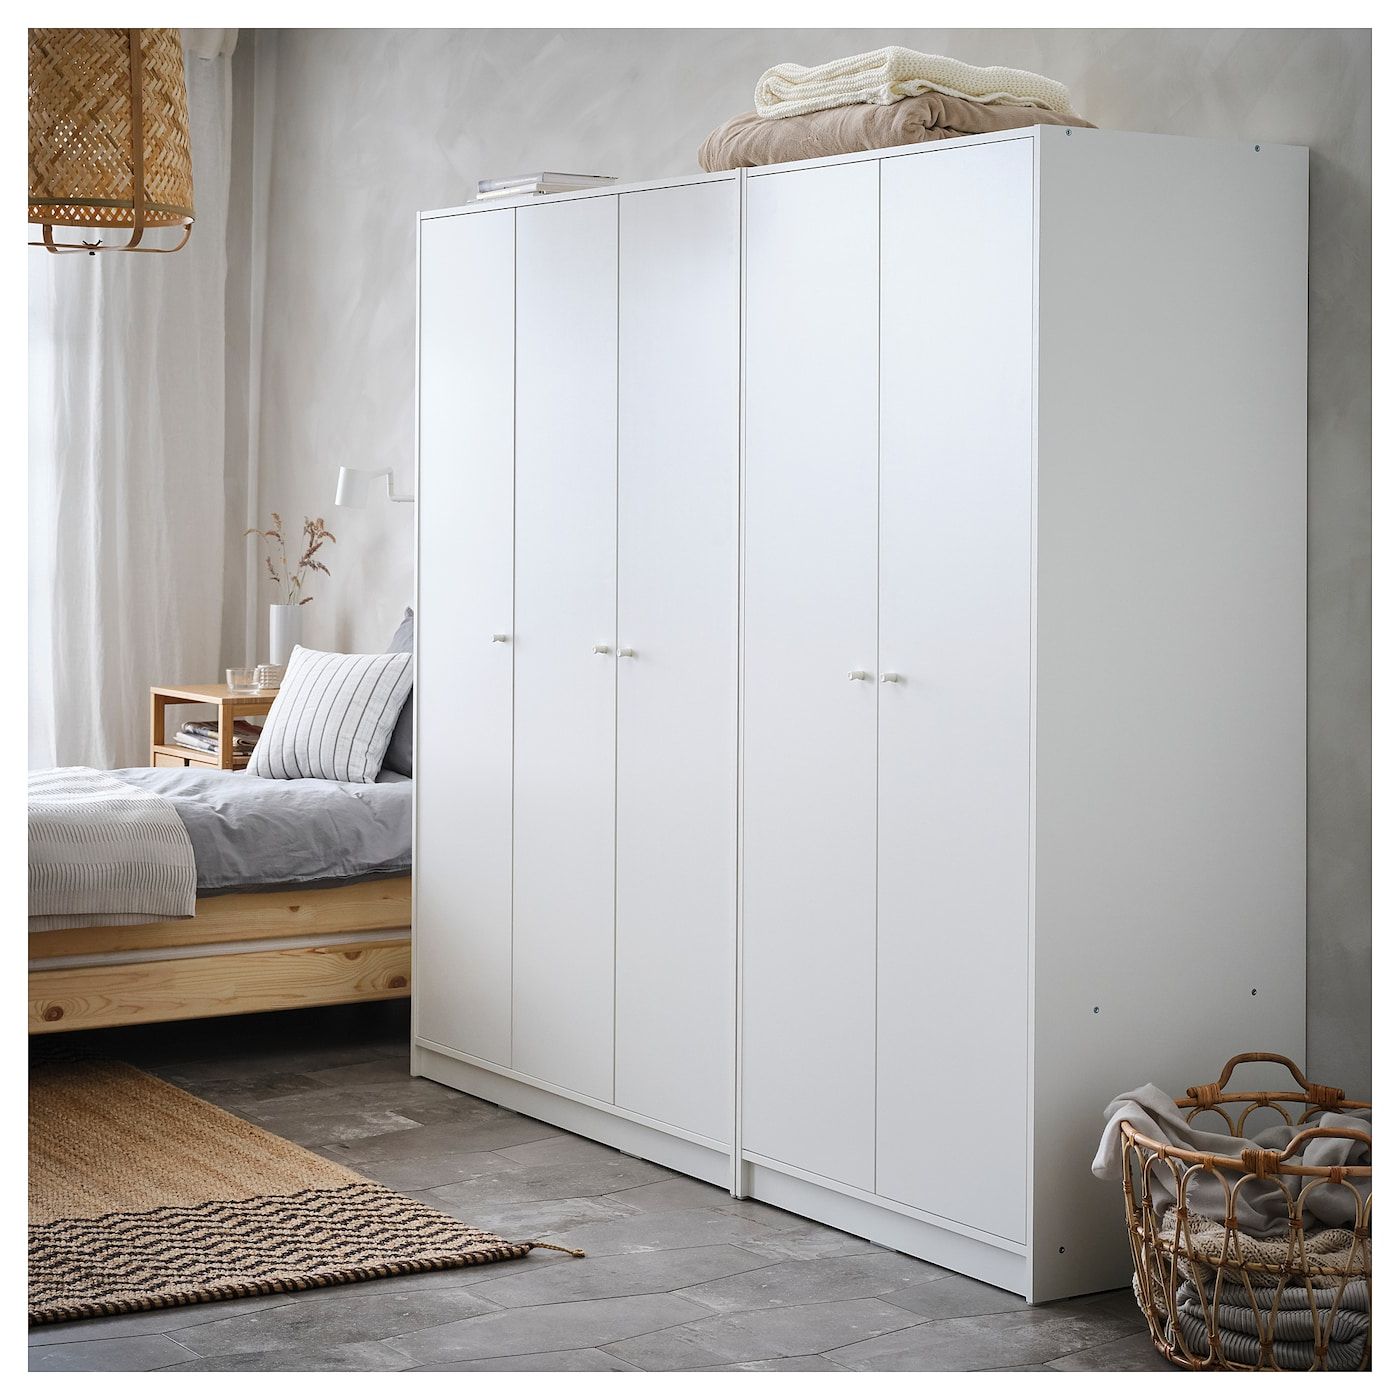 Kleppstad White, Wardrobe With 3 Doors, 117x176 Cm – Ikea In Cheap 3 Door Wardrobes (View 10 of 20)